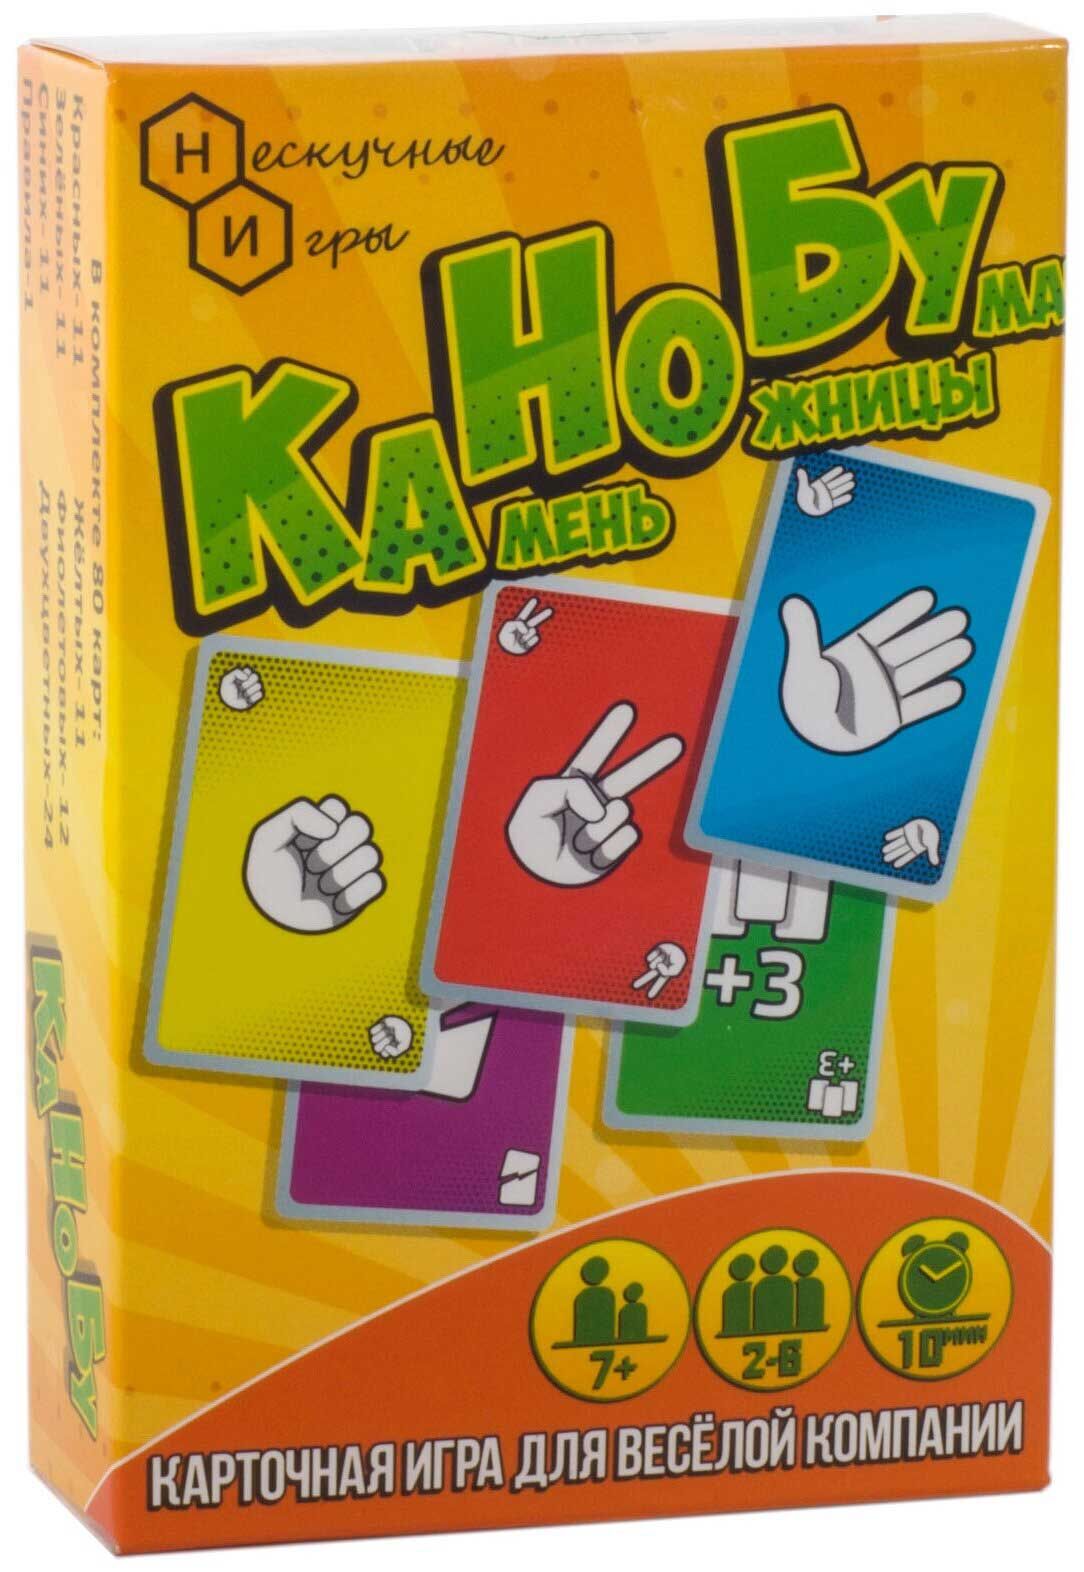 Игра карточная "Канобу" (Камень-ножницы-бумага) 8105 Нескучные игры